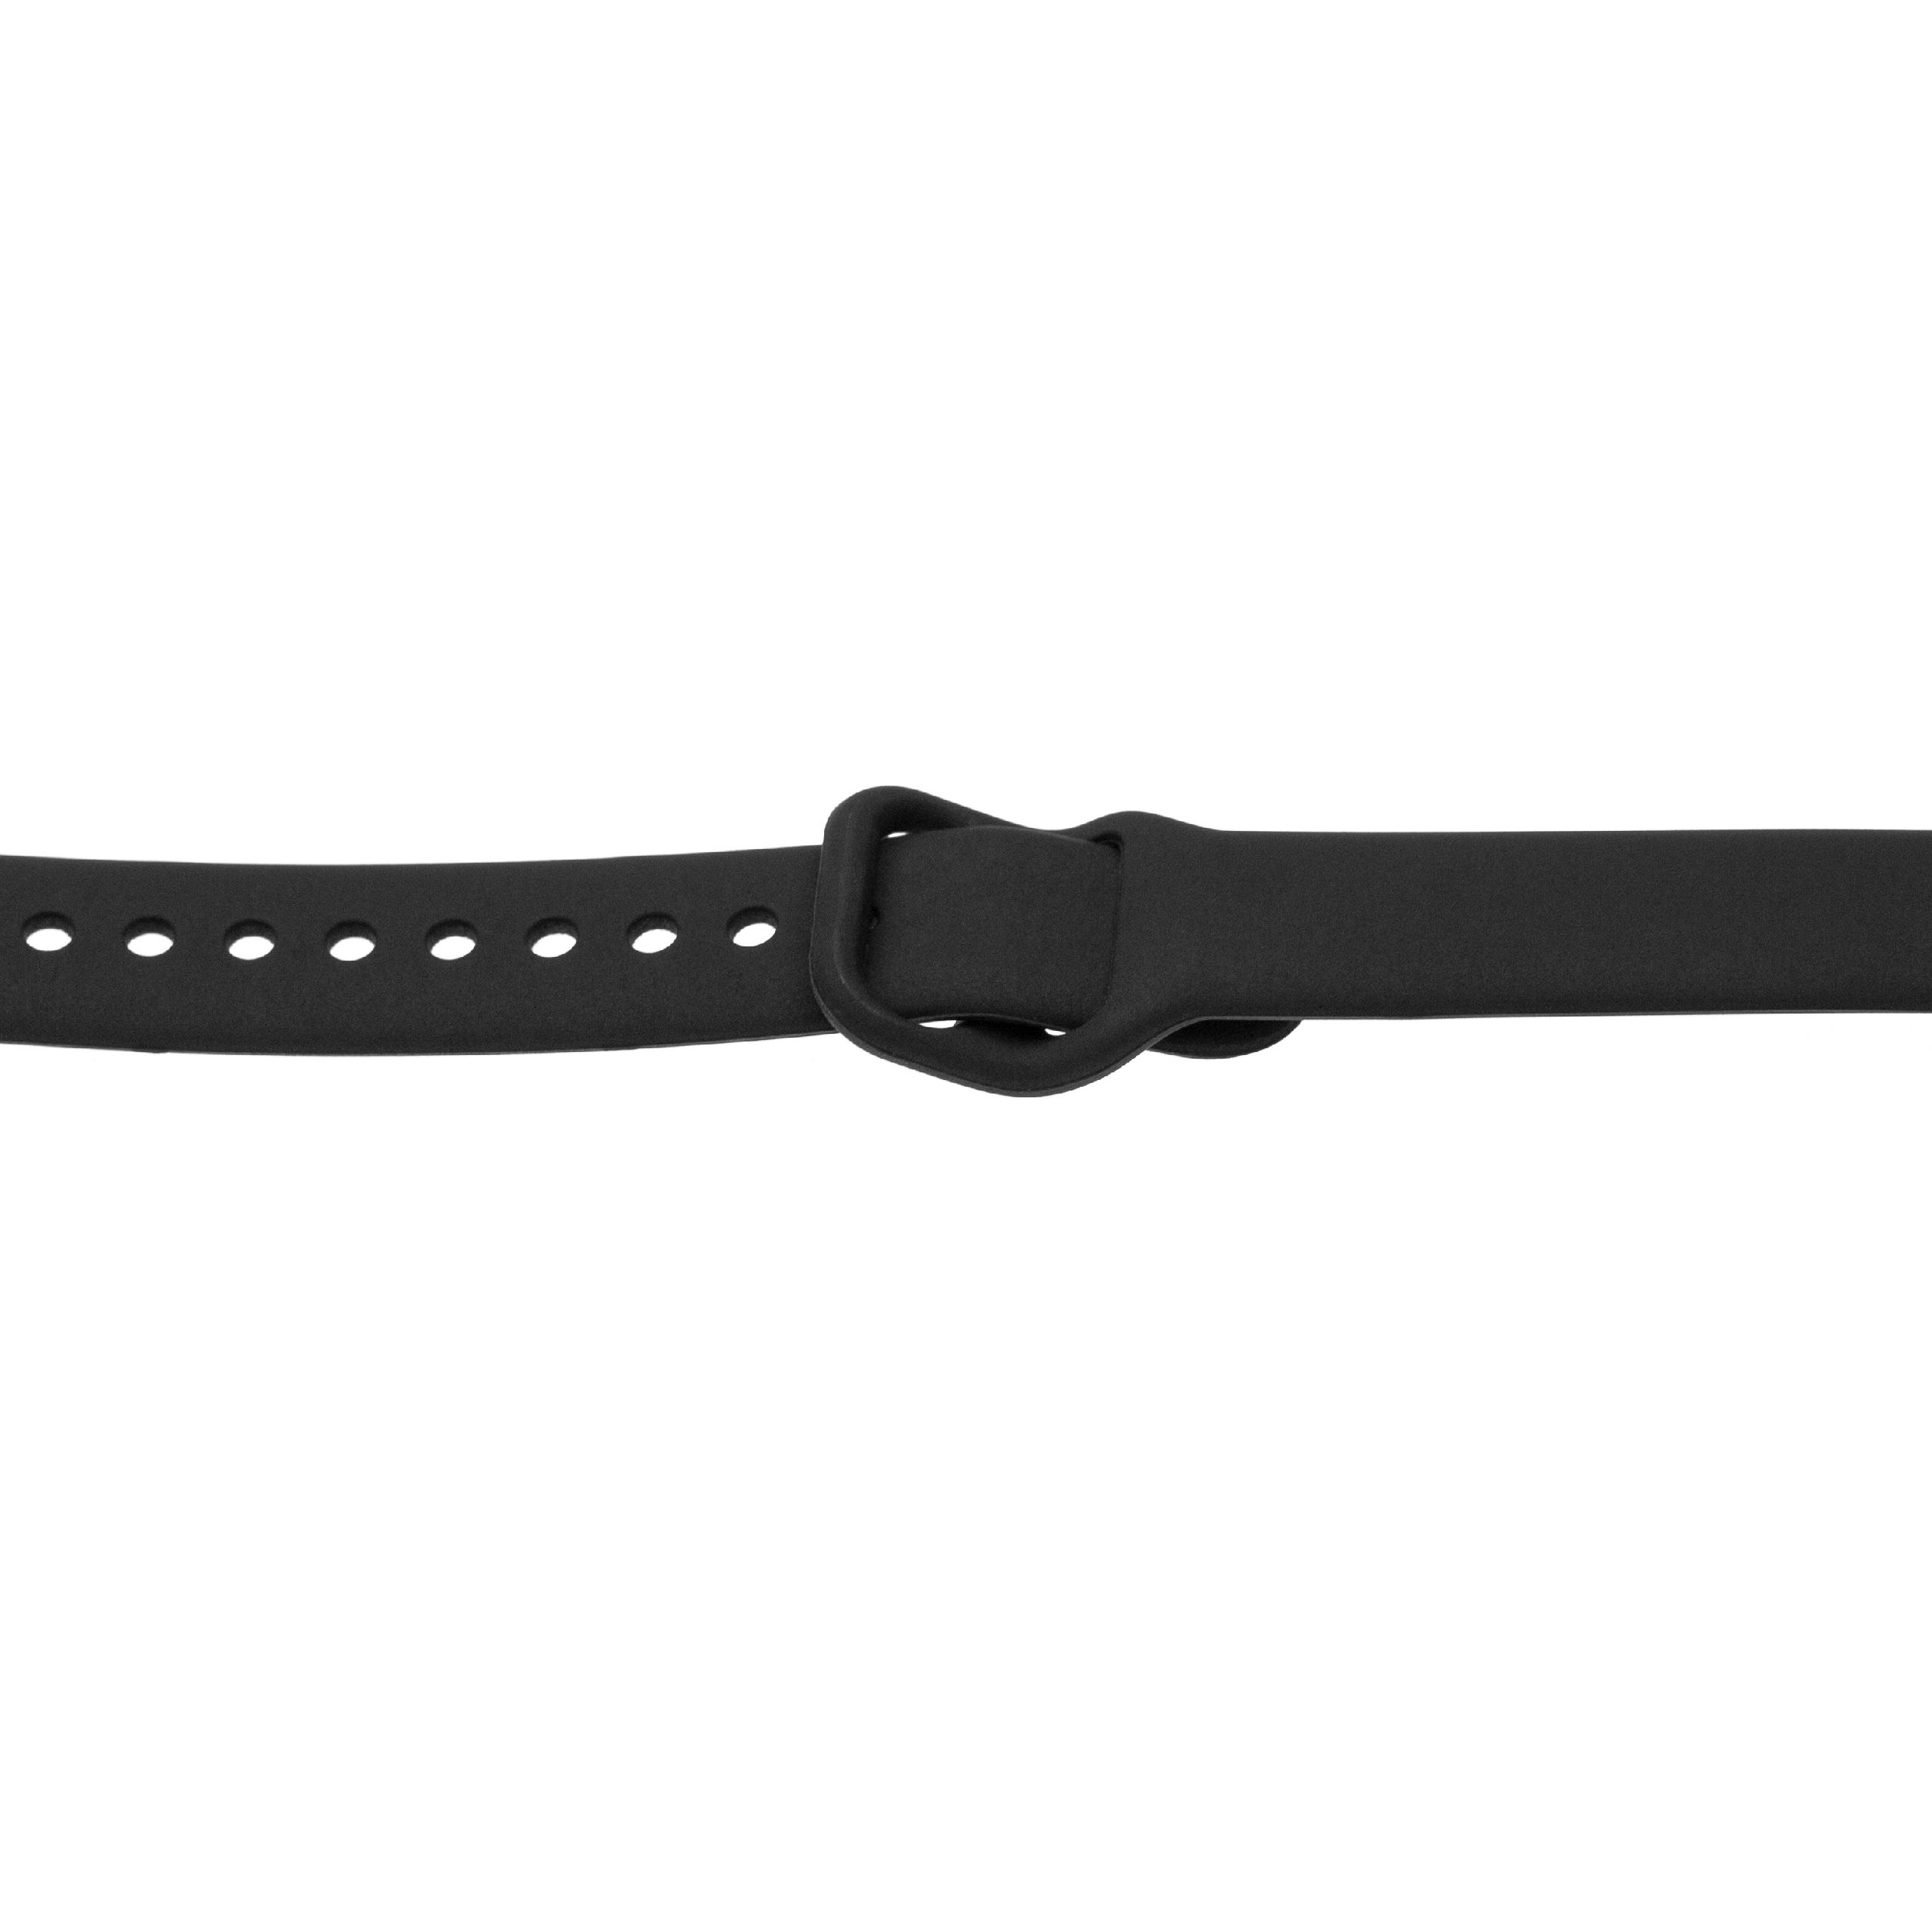 Bracelet pour montre intelligente Samsung Galaxy Fit - 11,5 + 8,9 cm de long, 17mm de large, silicone, noir